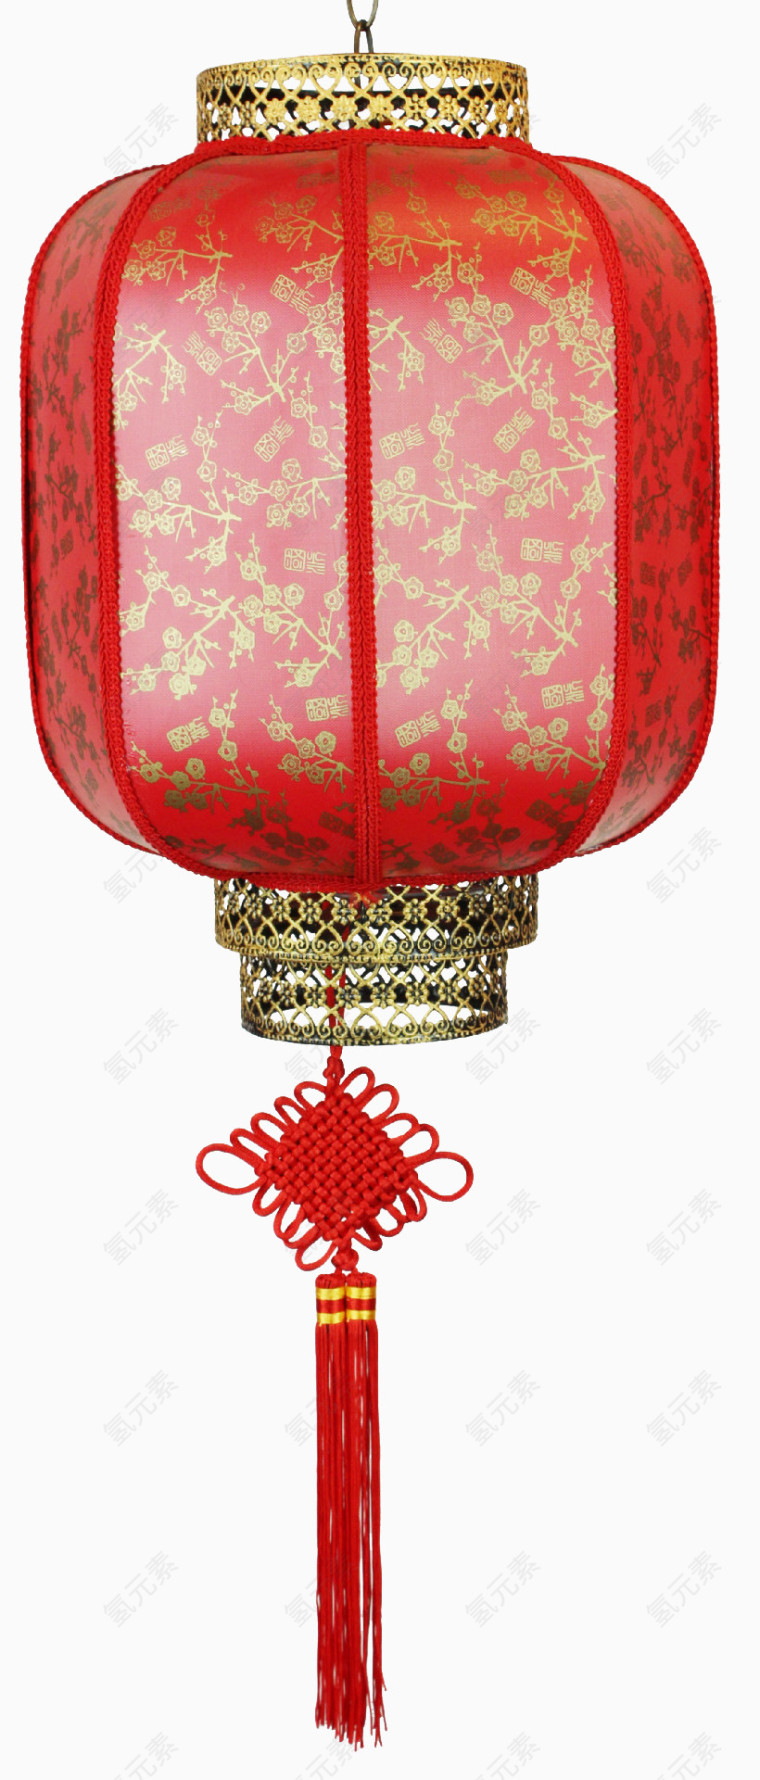 红色金属雕花灯笼